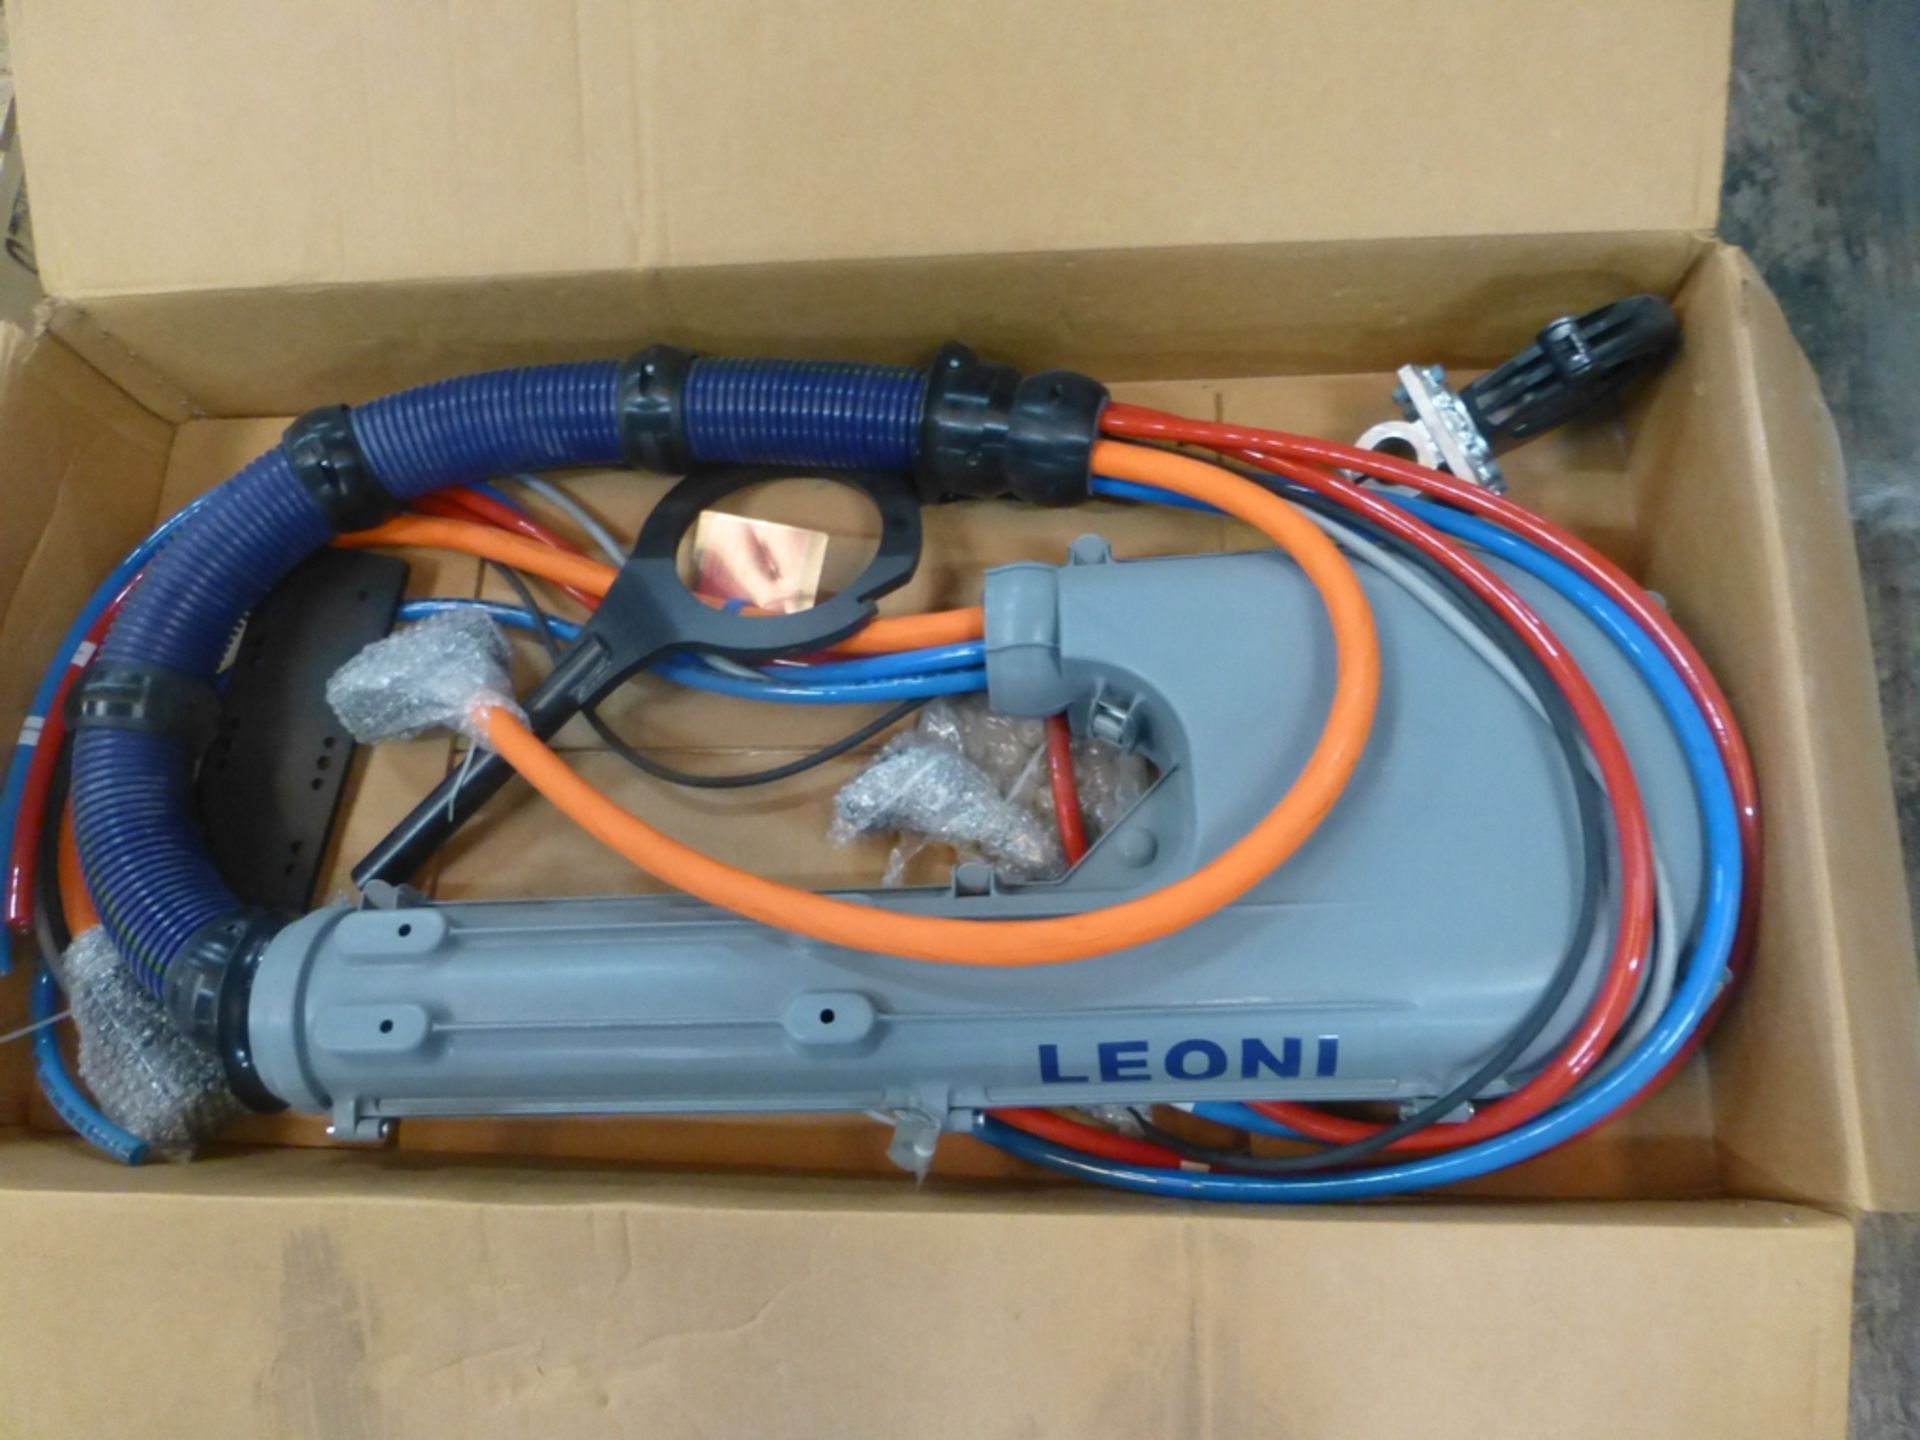 Leoni Robot Arm|Part No. FANUC R2000IB